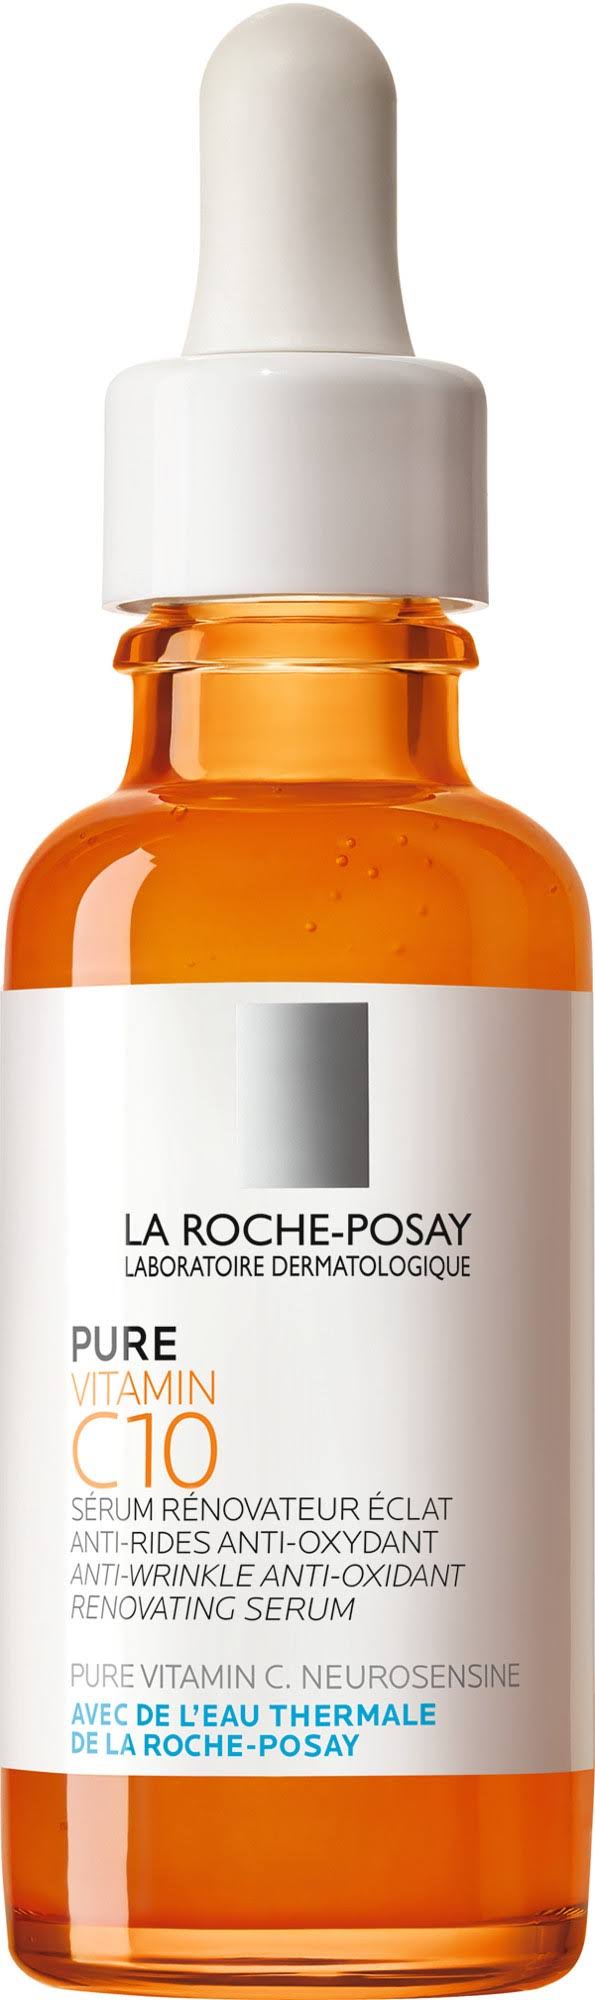 La Roche Posay Pure Vitamin C10 Serum - 30ml